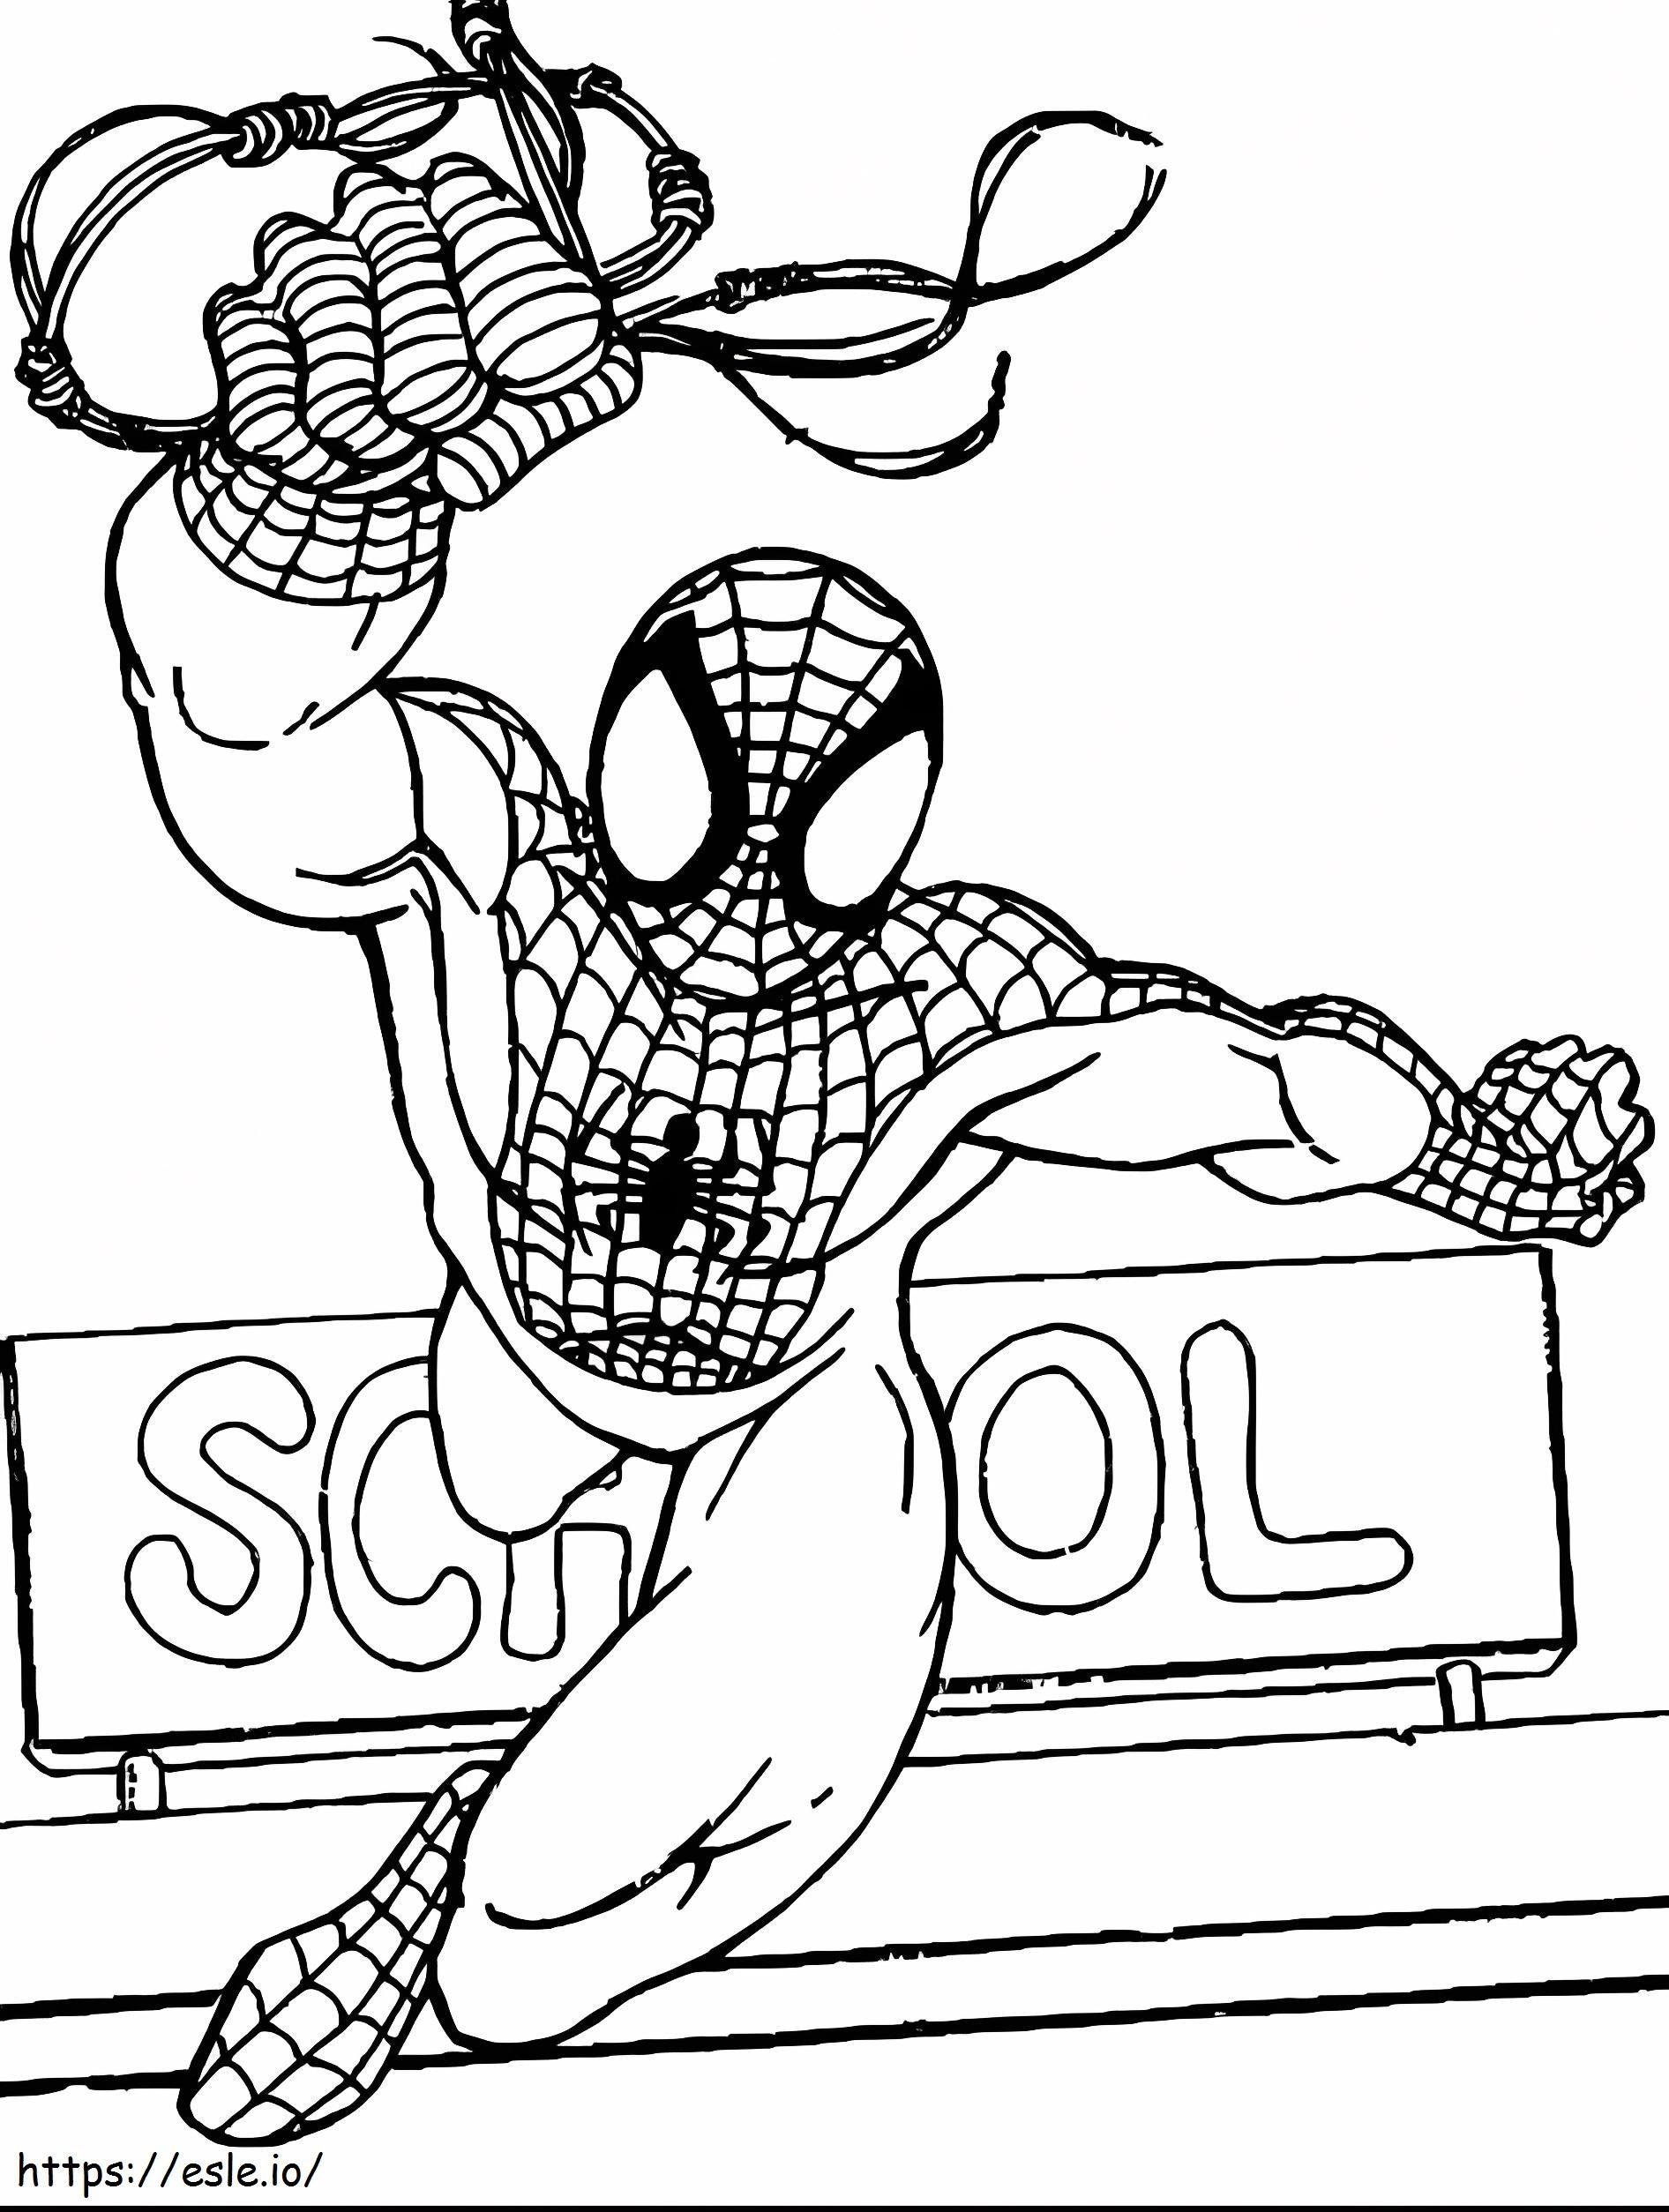 Homem-Aranha na escola para colorir